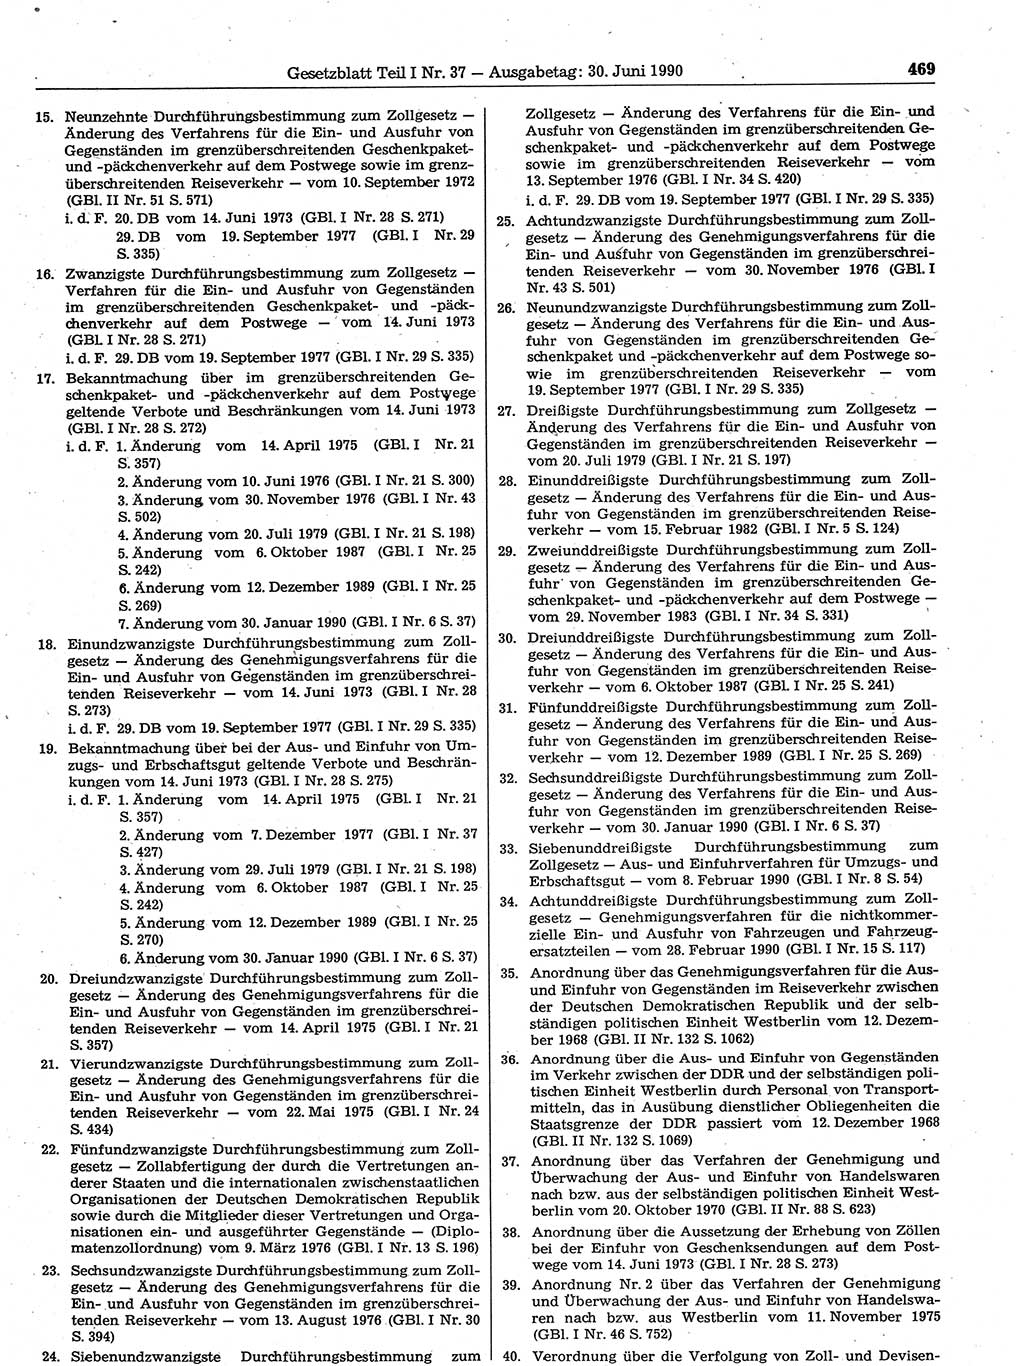 Gesetzblatt (GBl.) der Deutschen Demokratischen Republik (DDR) Teil Ⅰ 1990, Seite 469 (GBl. DDR Ⅰ 1990, S. 469)